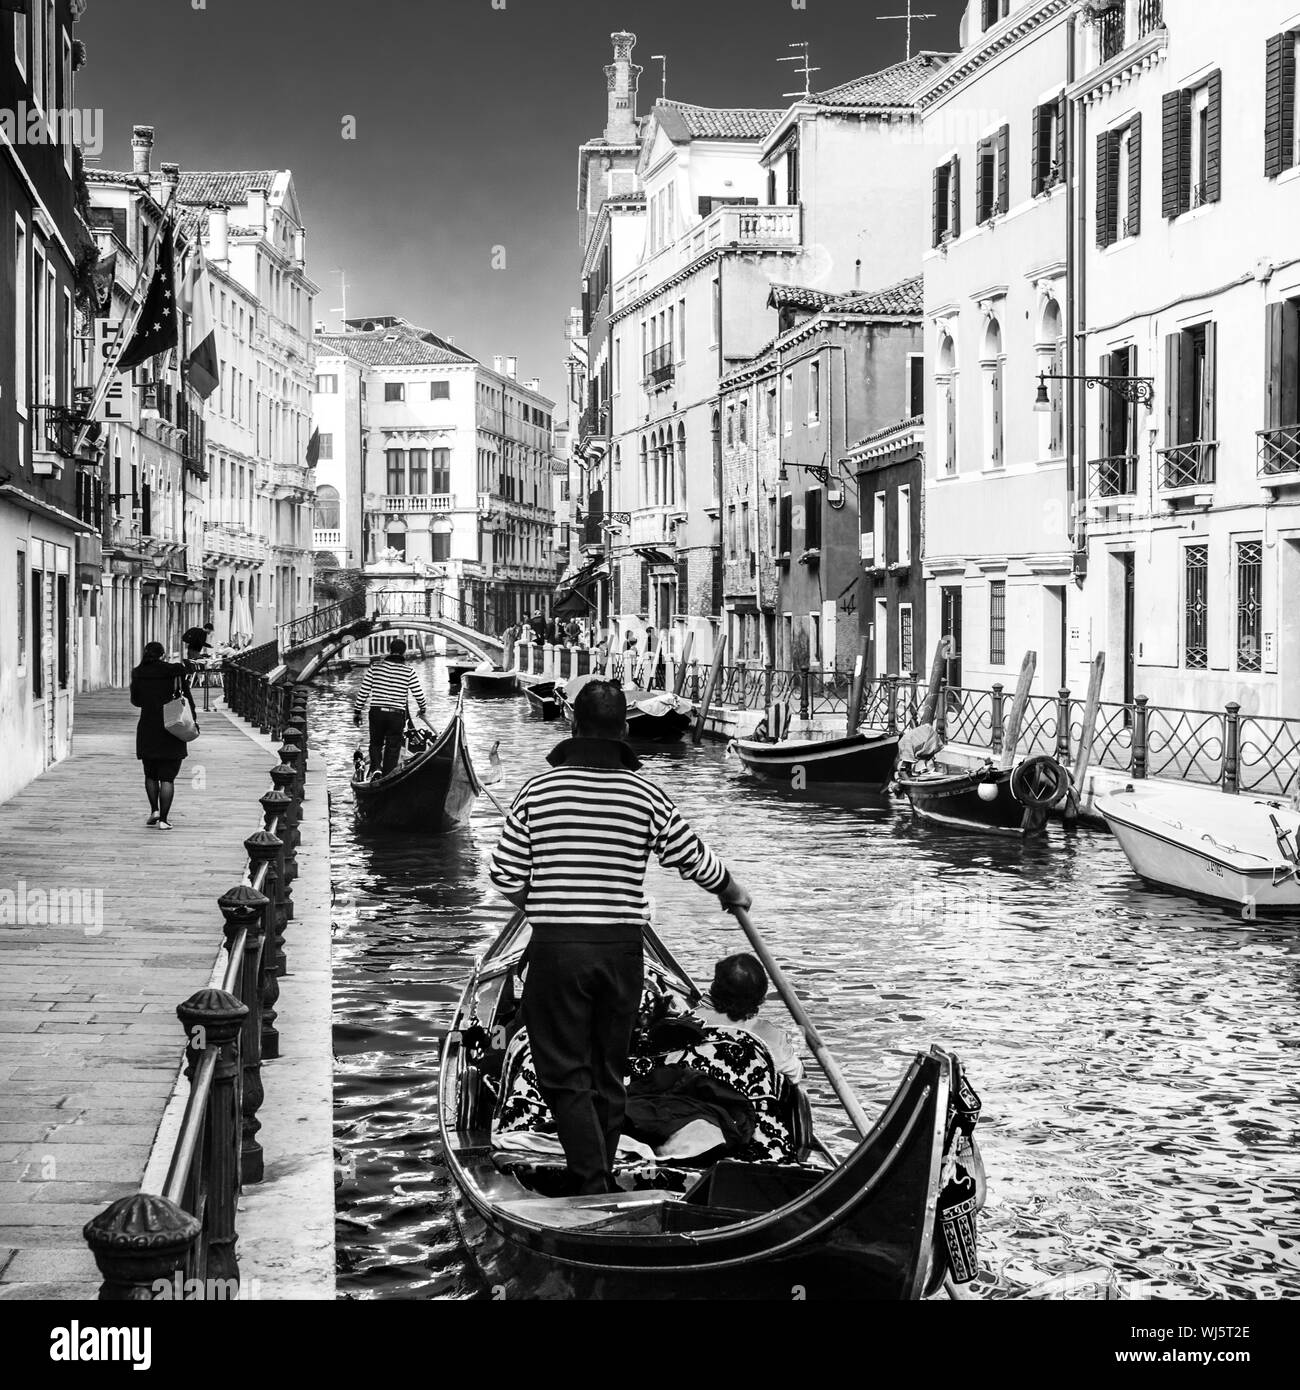 Gondeln vorbei an kleinen Kanal unter den alten historischen Häusern und Brücke in Venedig, Italien. Schwarz-weiß-Bild. Stockfoto